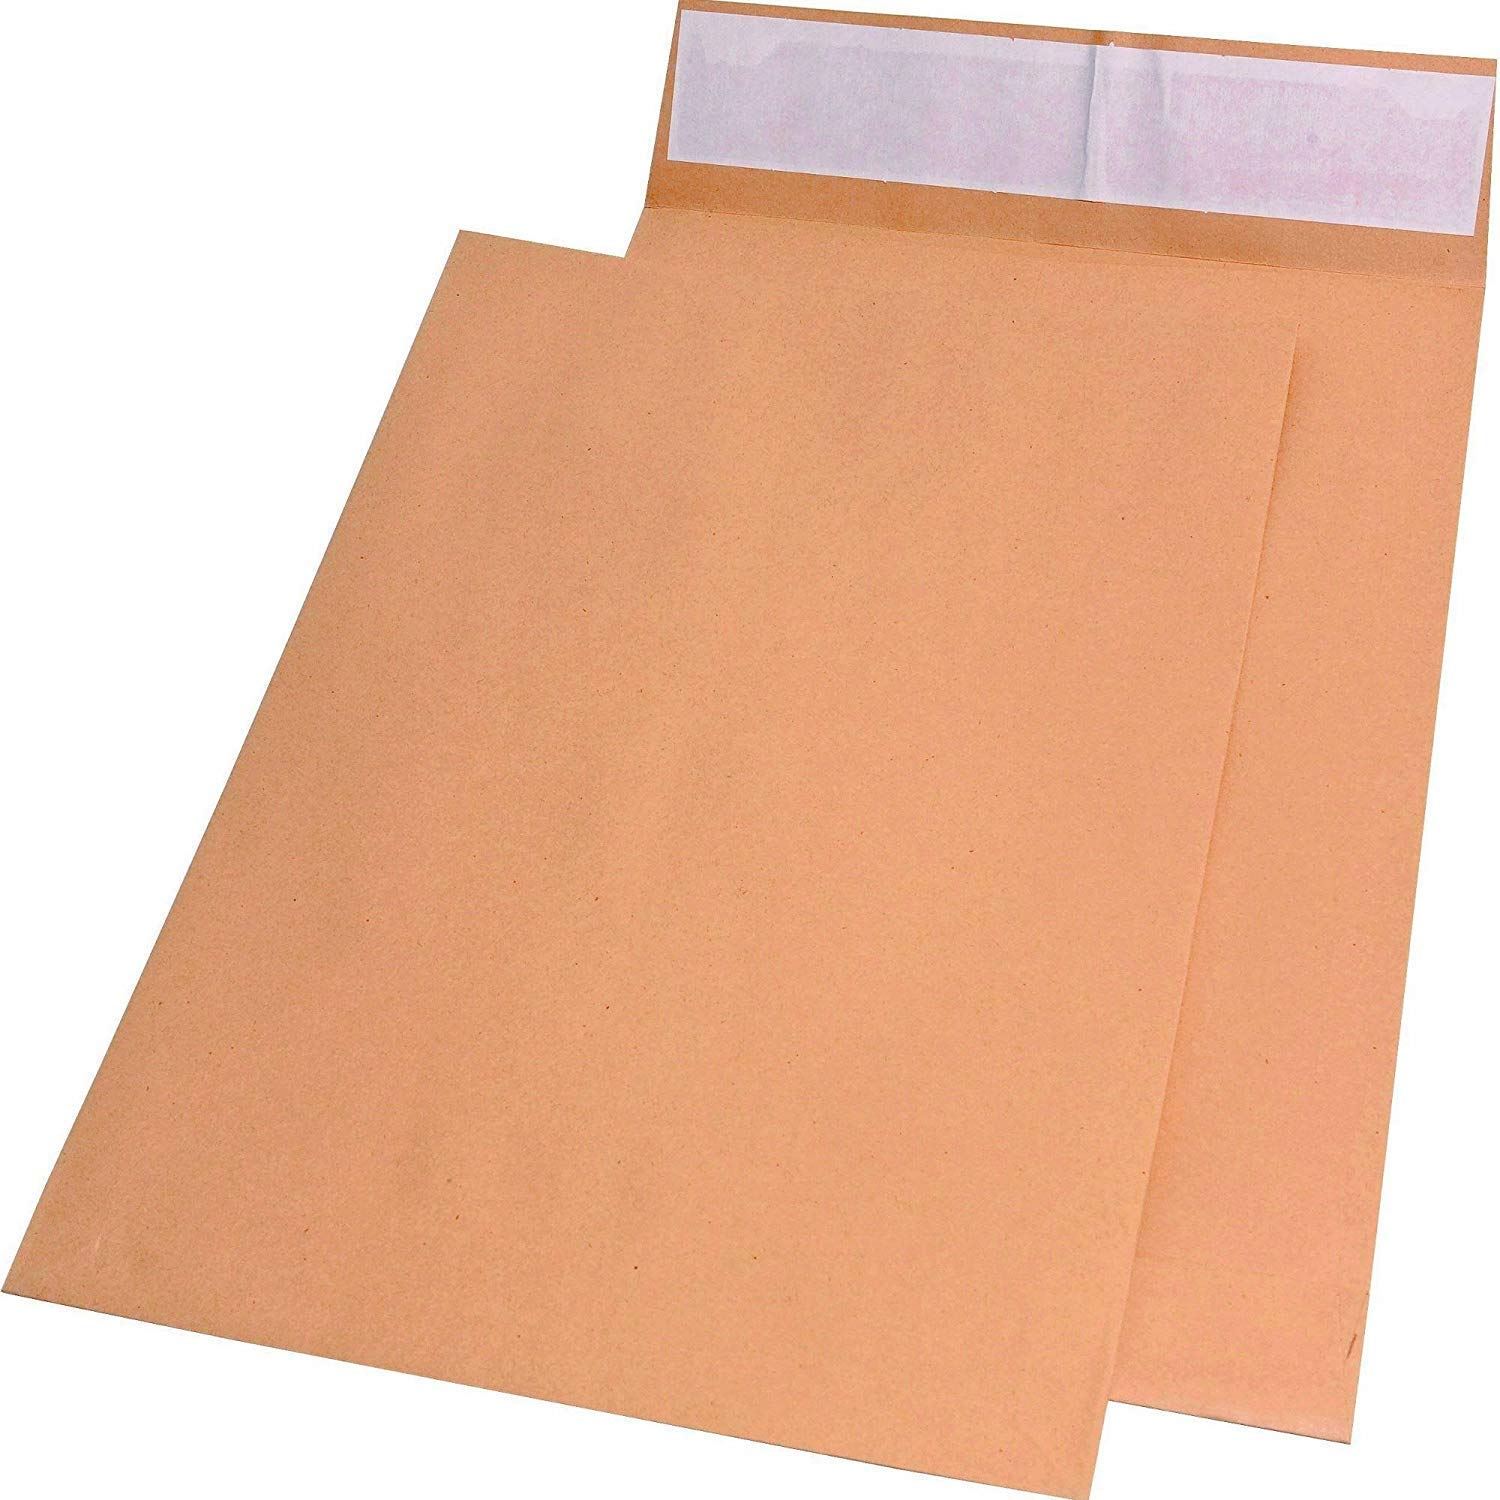 Elepa - rössler kuvert 30021434 Faltentaschen E4 ohne Fenster mit 40 mm-Falte und Klotzboden, 140 g/qm, 100 Stück, braun